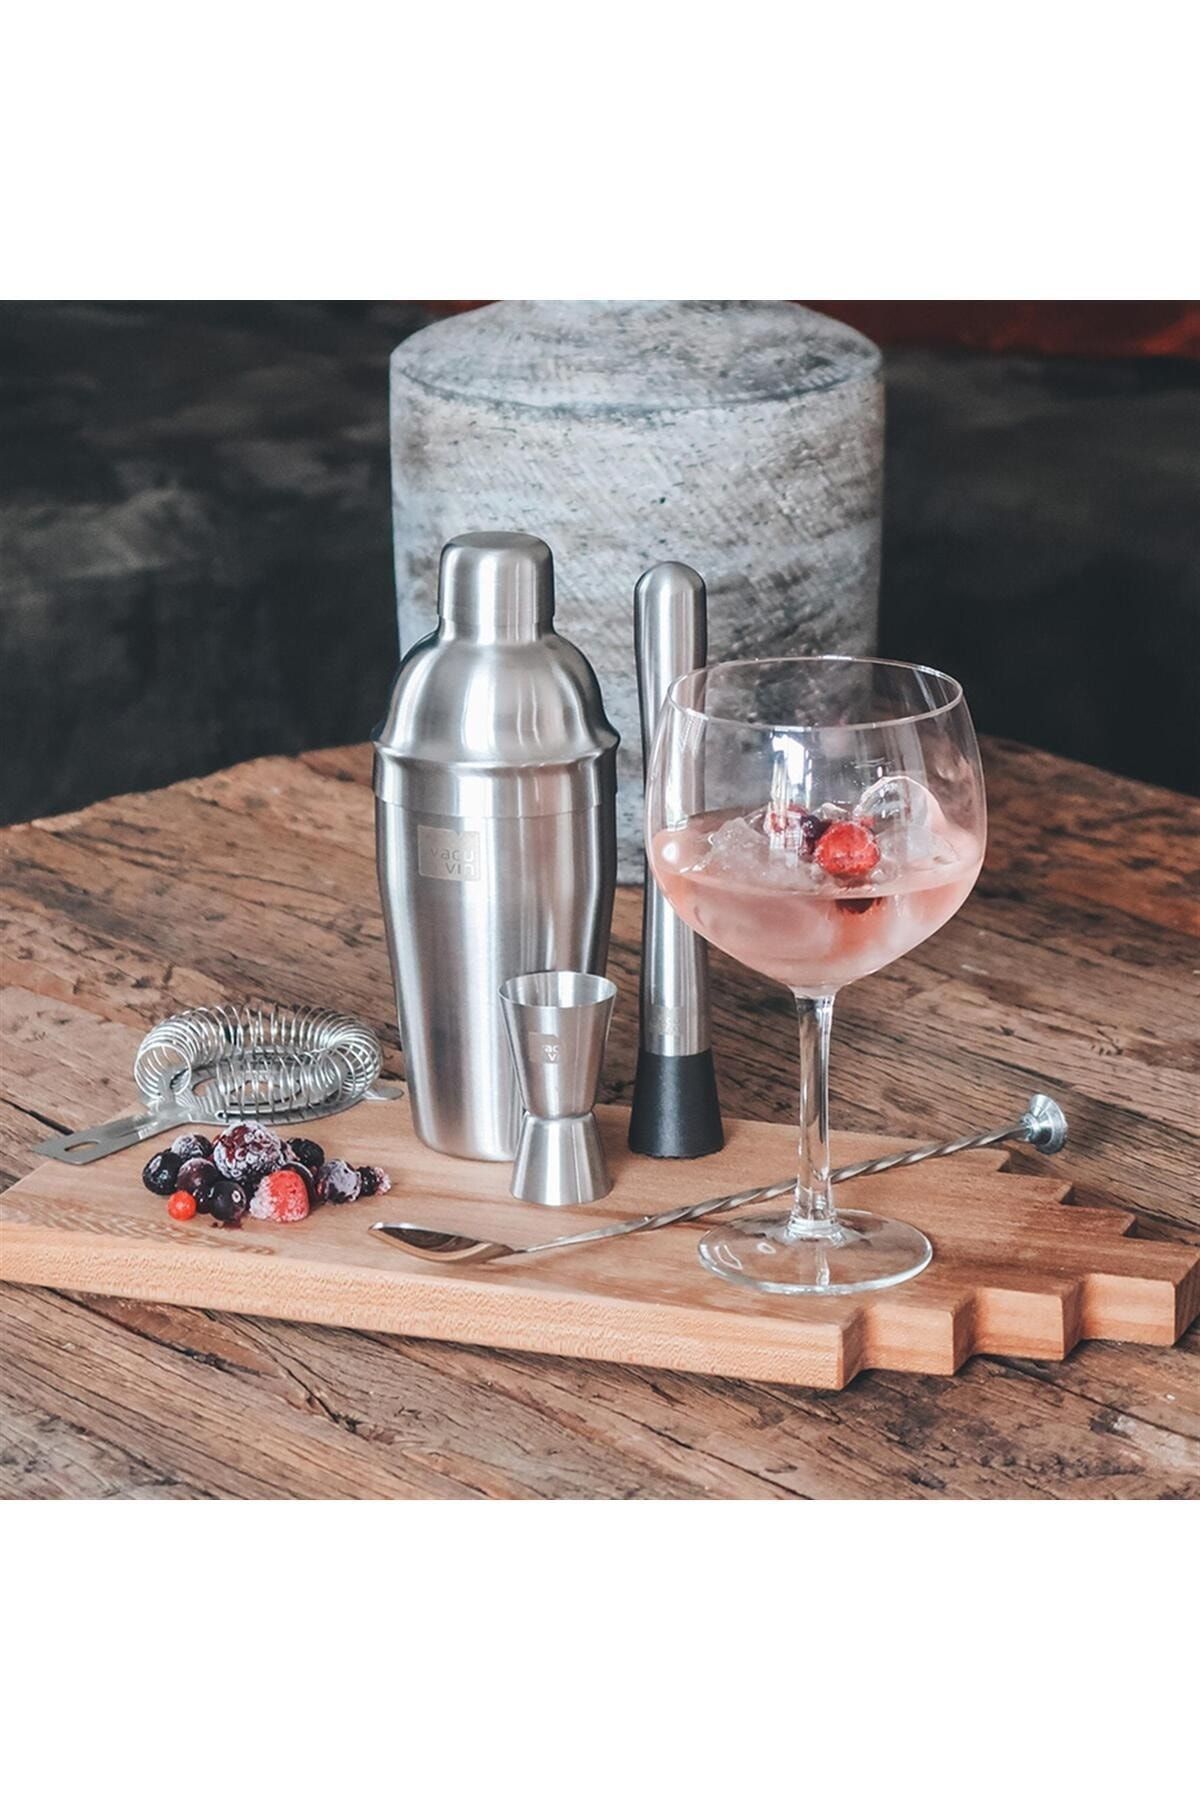 Cocktail Shaker Stainless Steel - Vacu Vin